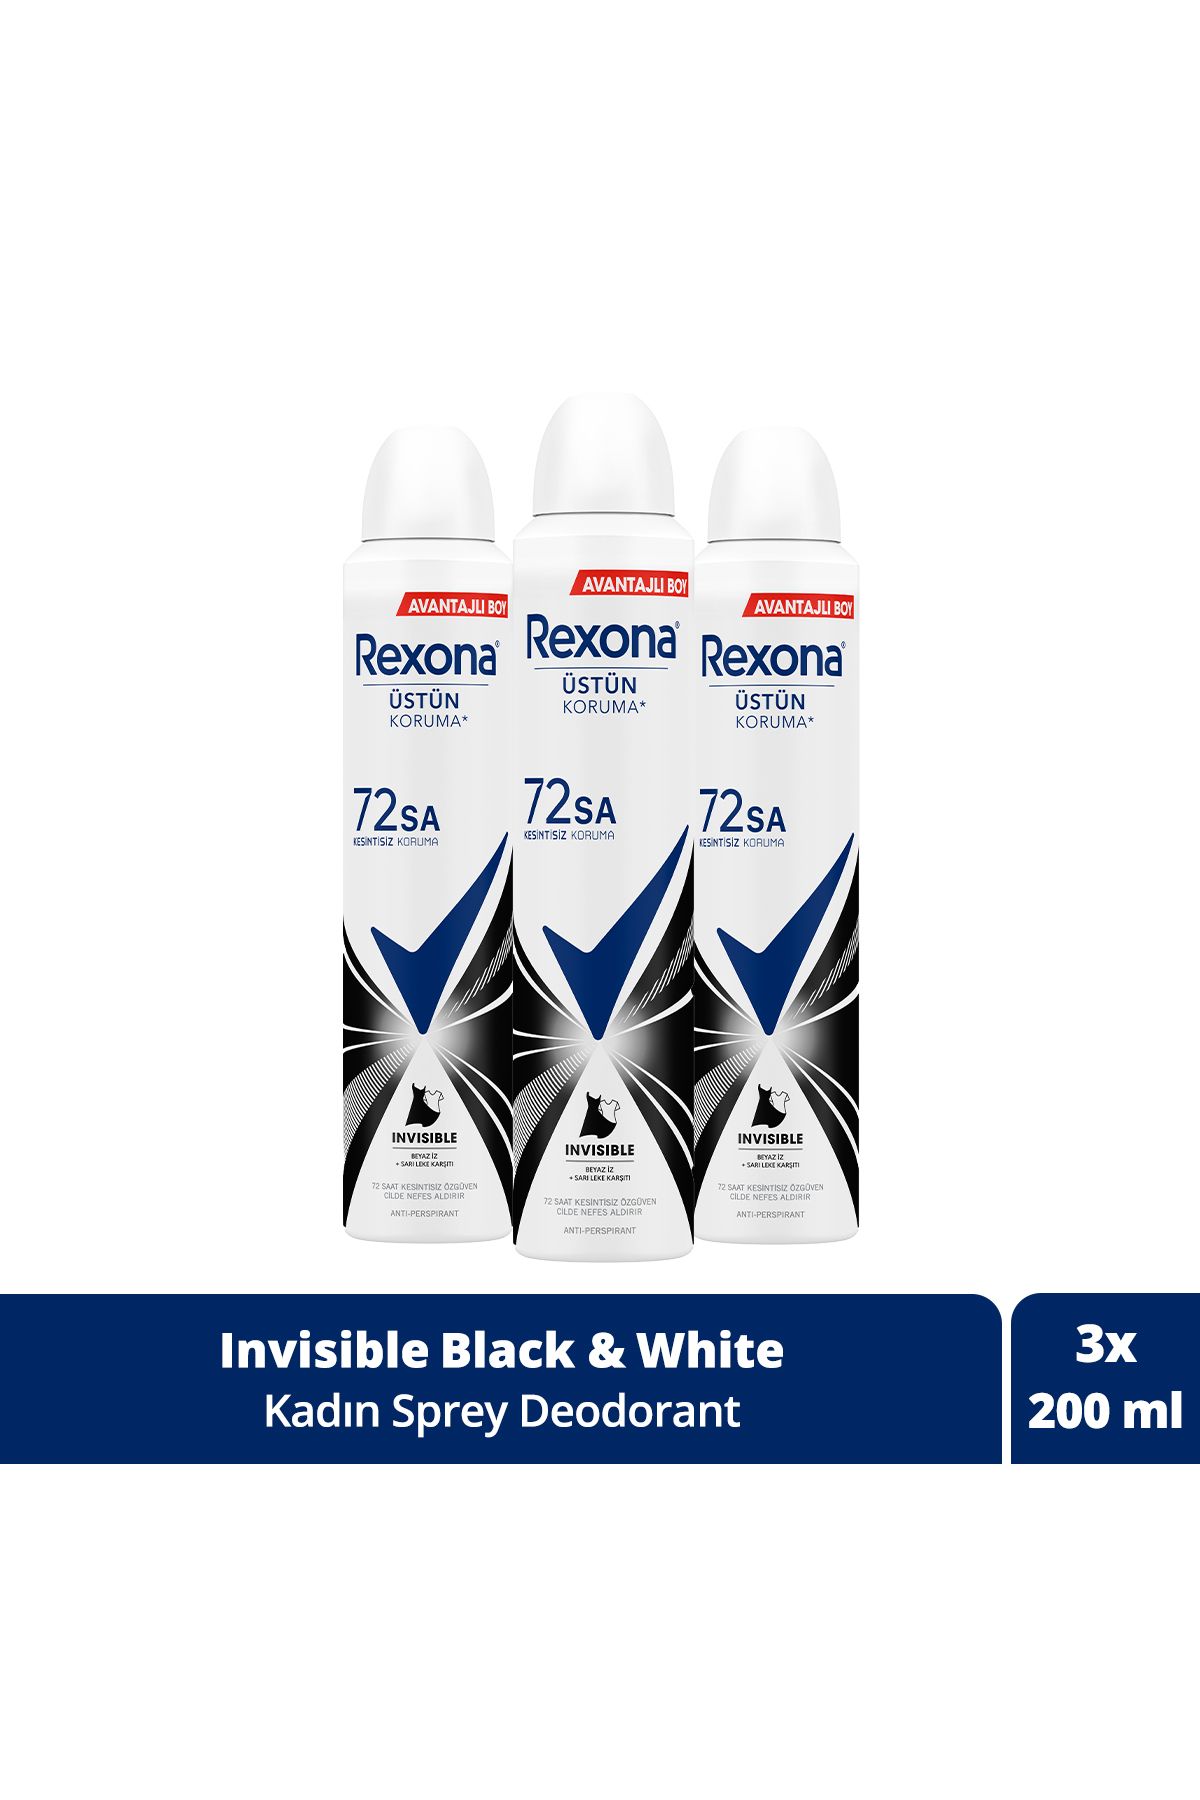 Rexona Kadın Sprey Deodorant Invisible Beyaz Iz Sarı Leke Karşıtı 72 Saat Kesintisiz Üstün Koruma 20